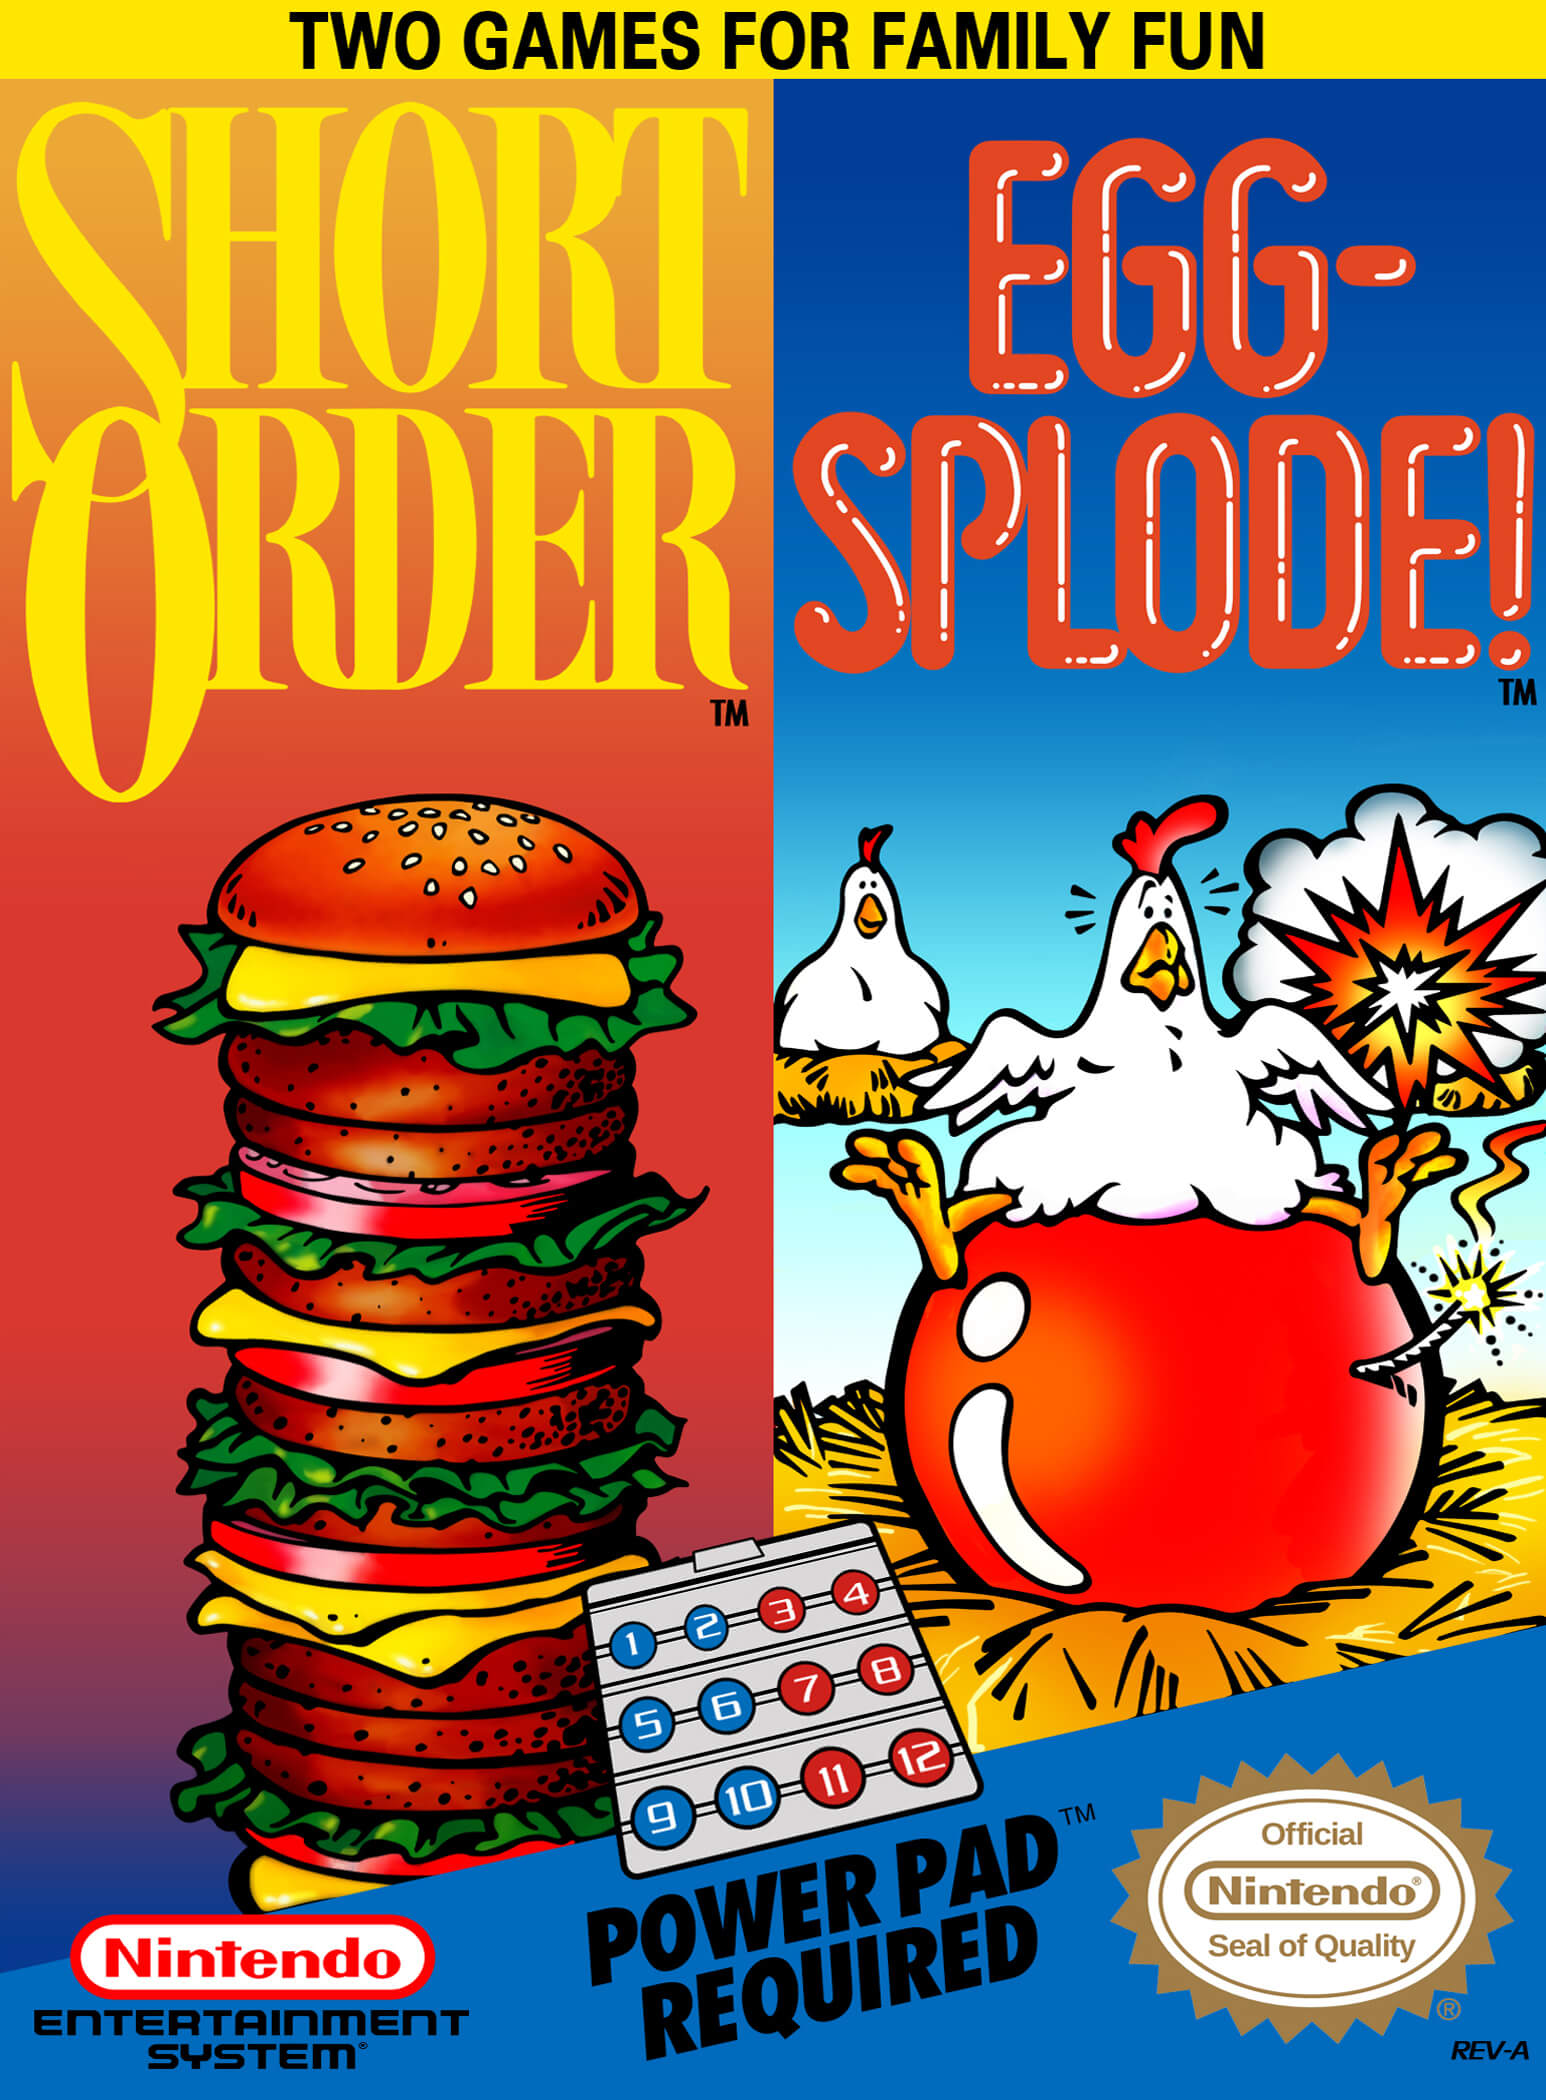 Short Order / Eggsplode!